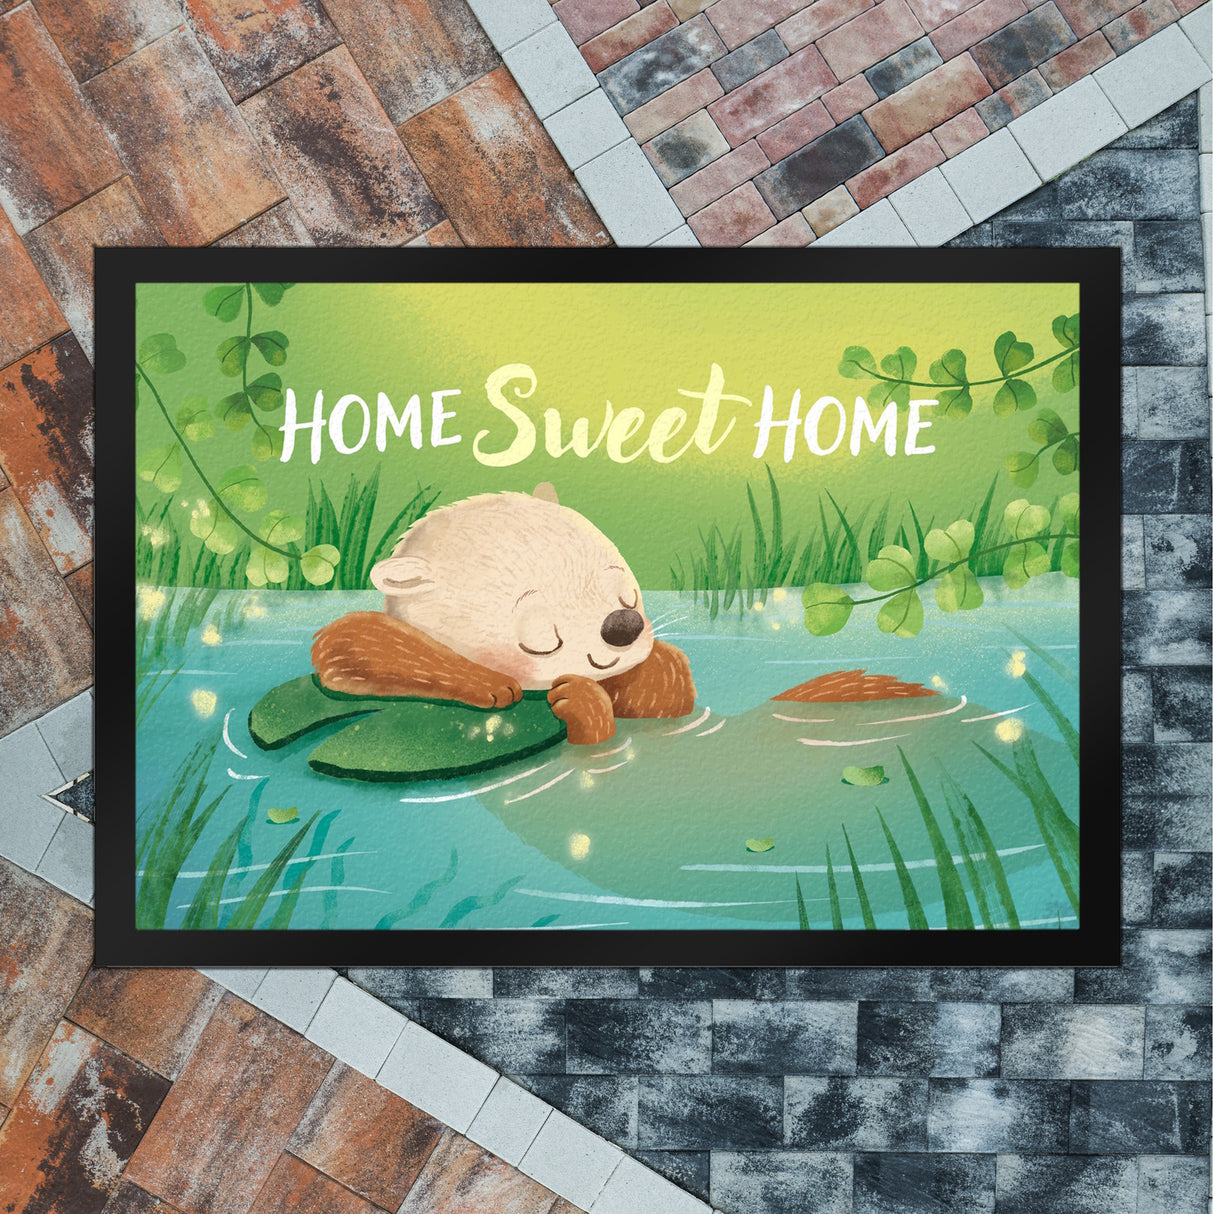 Schlafender Otter Fußmatte in 35x50 cm mit Spruch Home Sweet Home